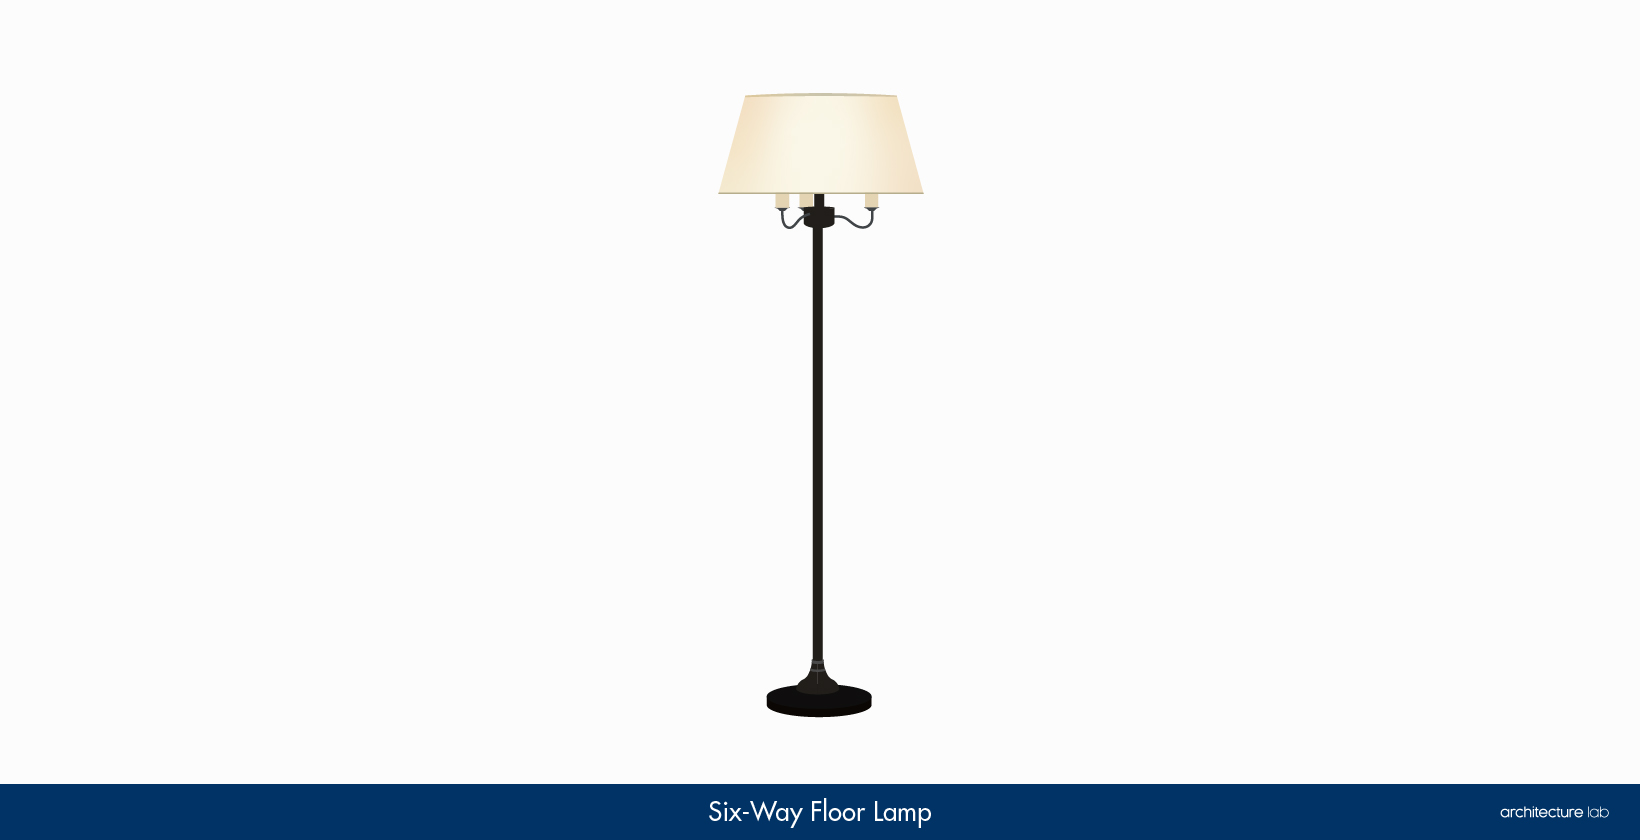 8. Six-way floor lamp